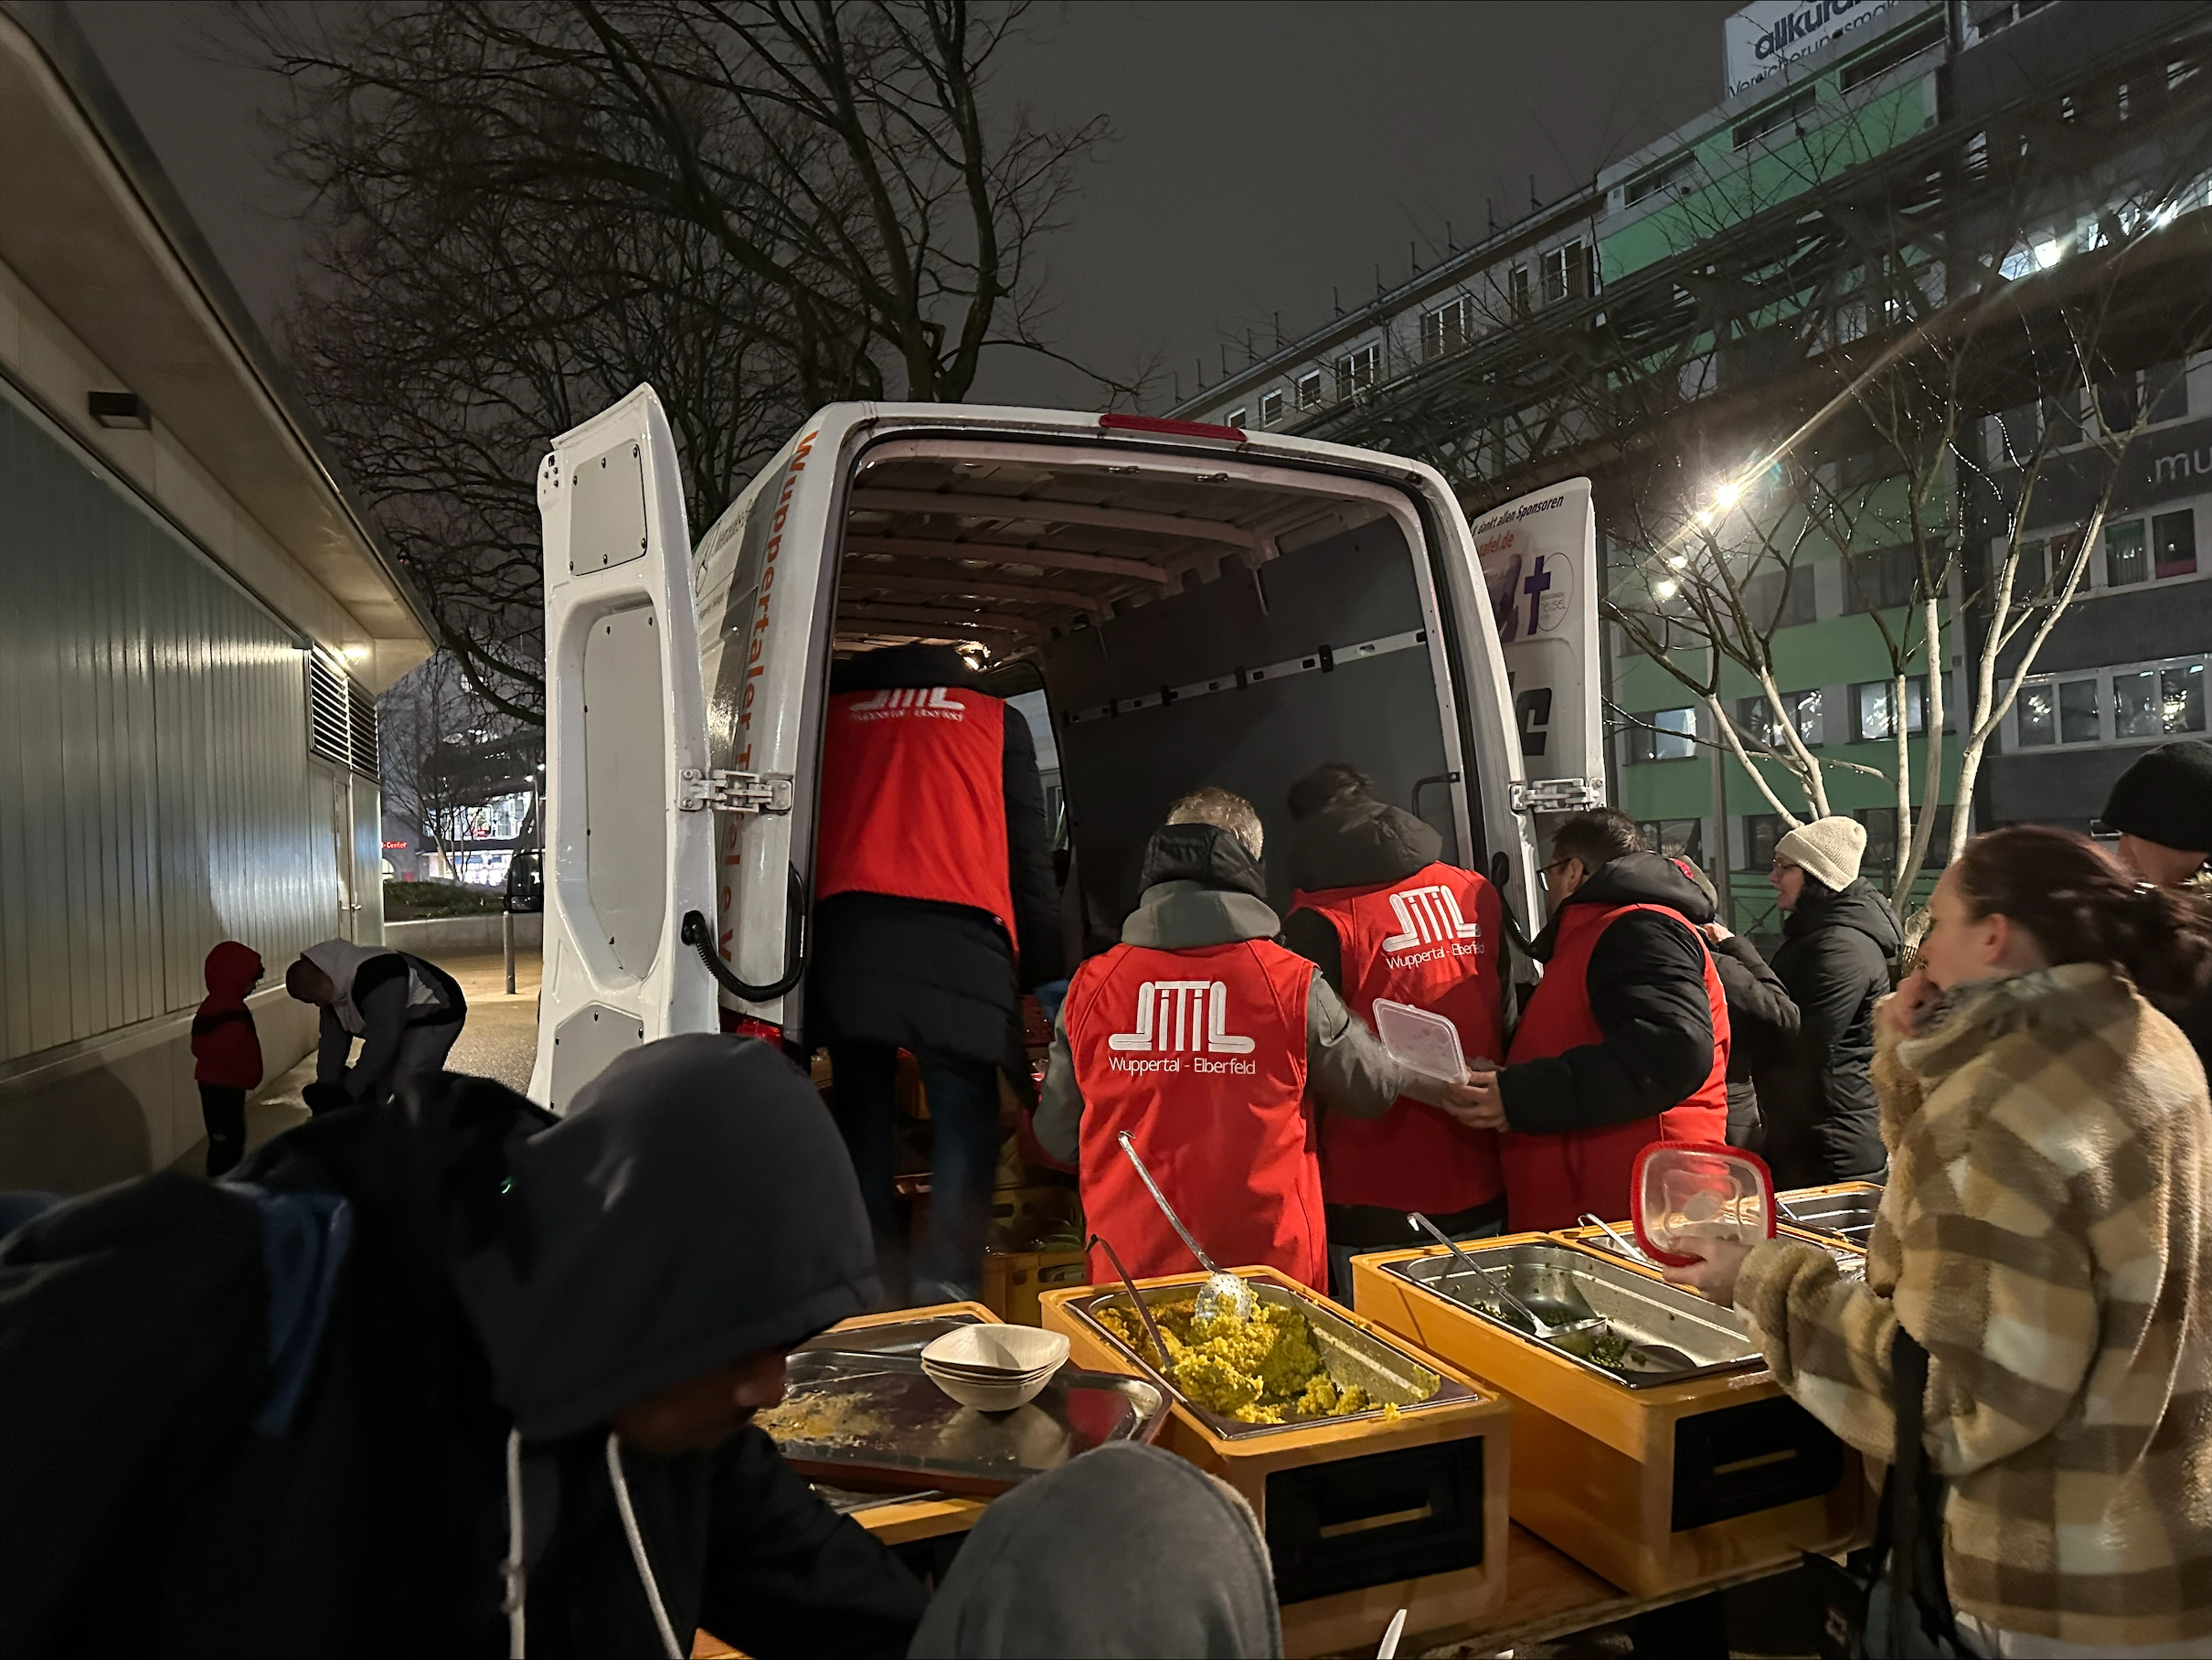 DITIB setzt ein Zeichen der Solidarität: 200 Lahmacun und 200 Suppen für Obdachlose in Wuppertal